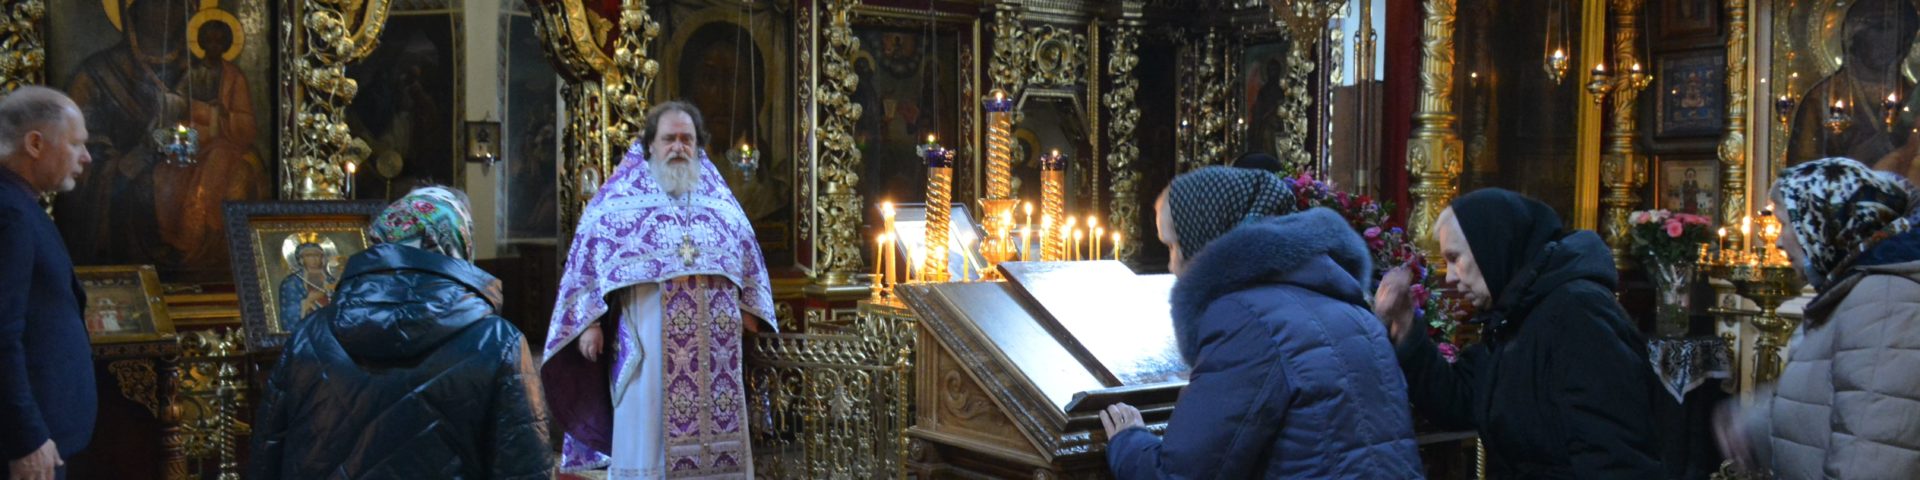 Благочинный совершил литургию в день памяти 40 мучеников Севастийских